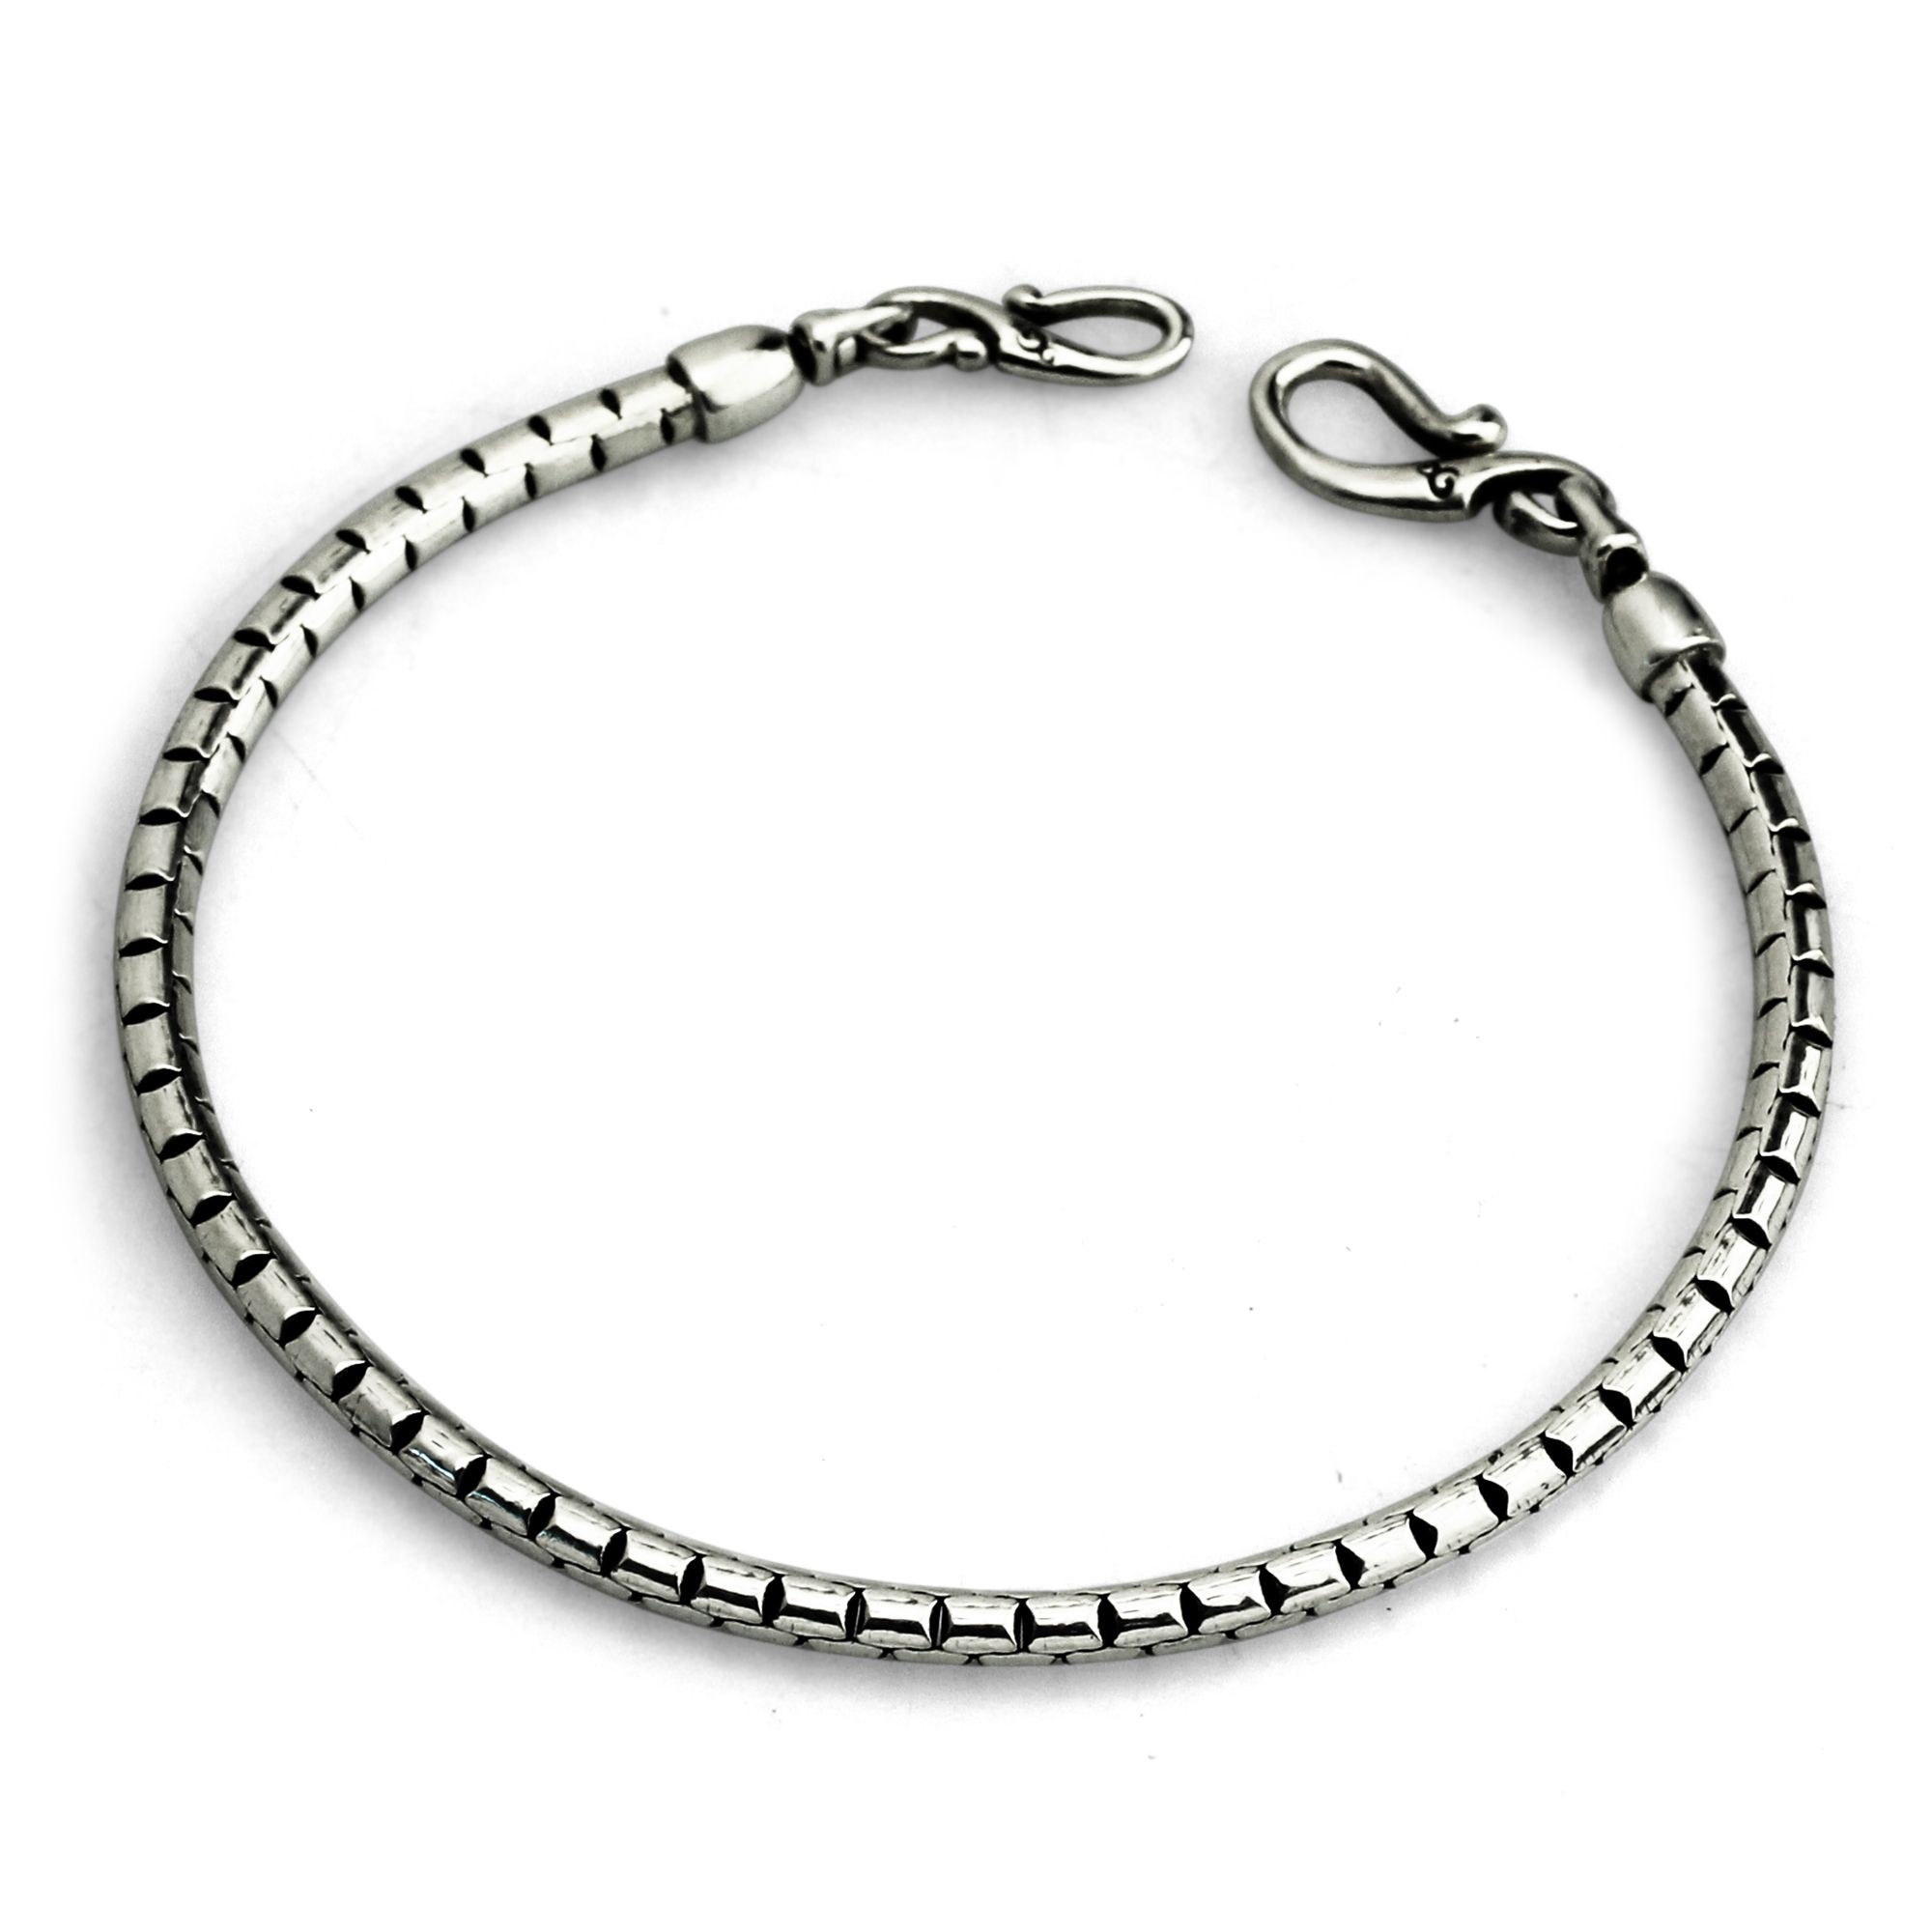 Pin by Mae.Slim🧿 on Biz ideas  Wrist jewelry, Bangle bracelets